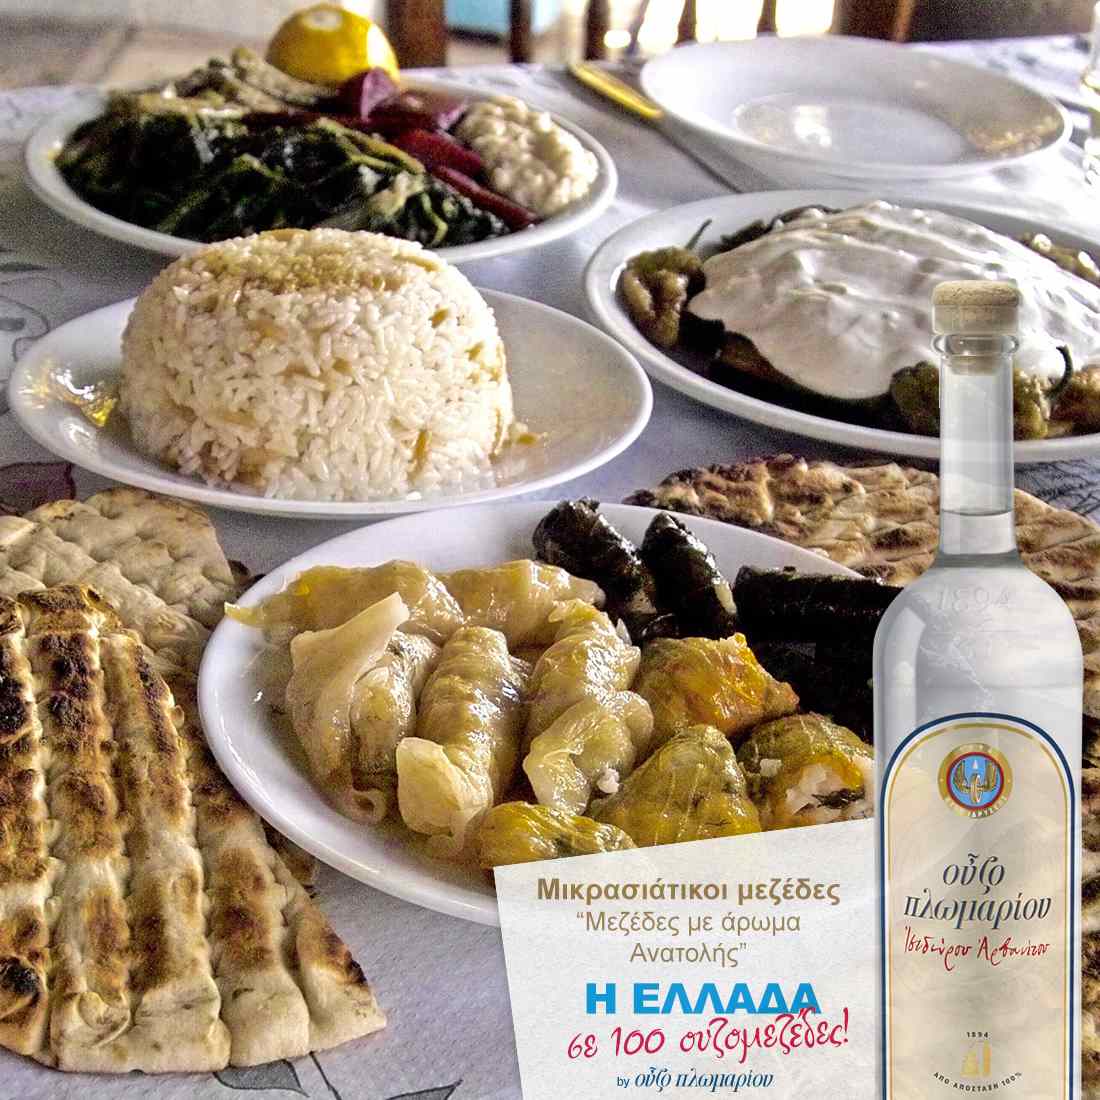 Μικρασιάτικοι μεζέδες - Κως - Ουζομεζέδες - Greek Gastronomy Guide